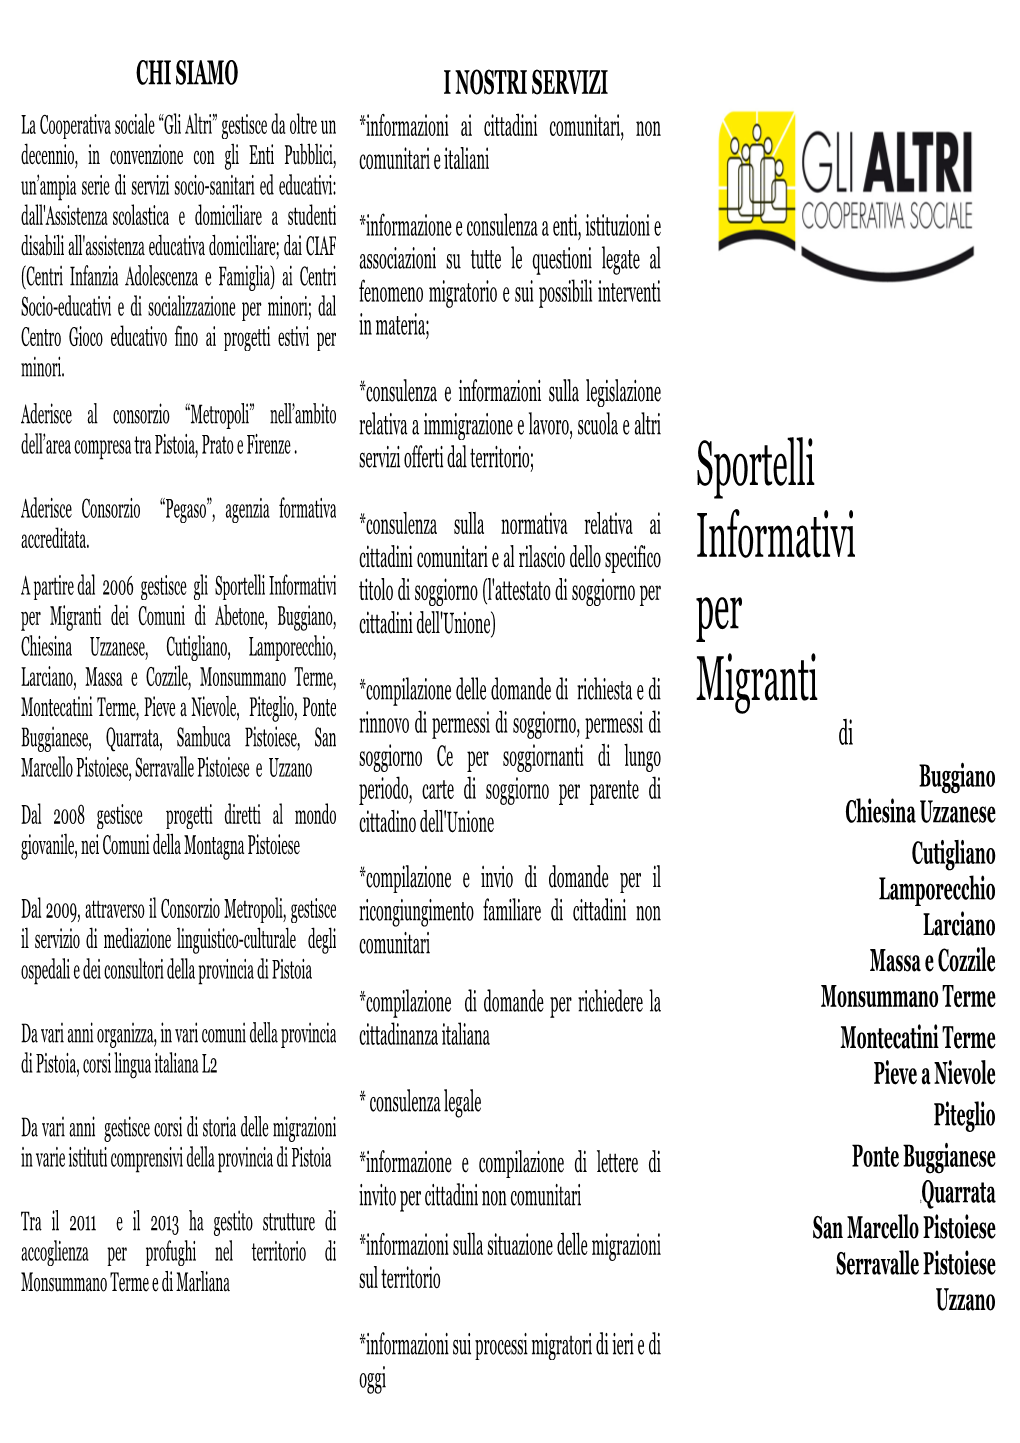 Sportelli Informativi Per Migranti